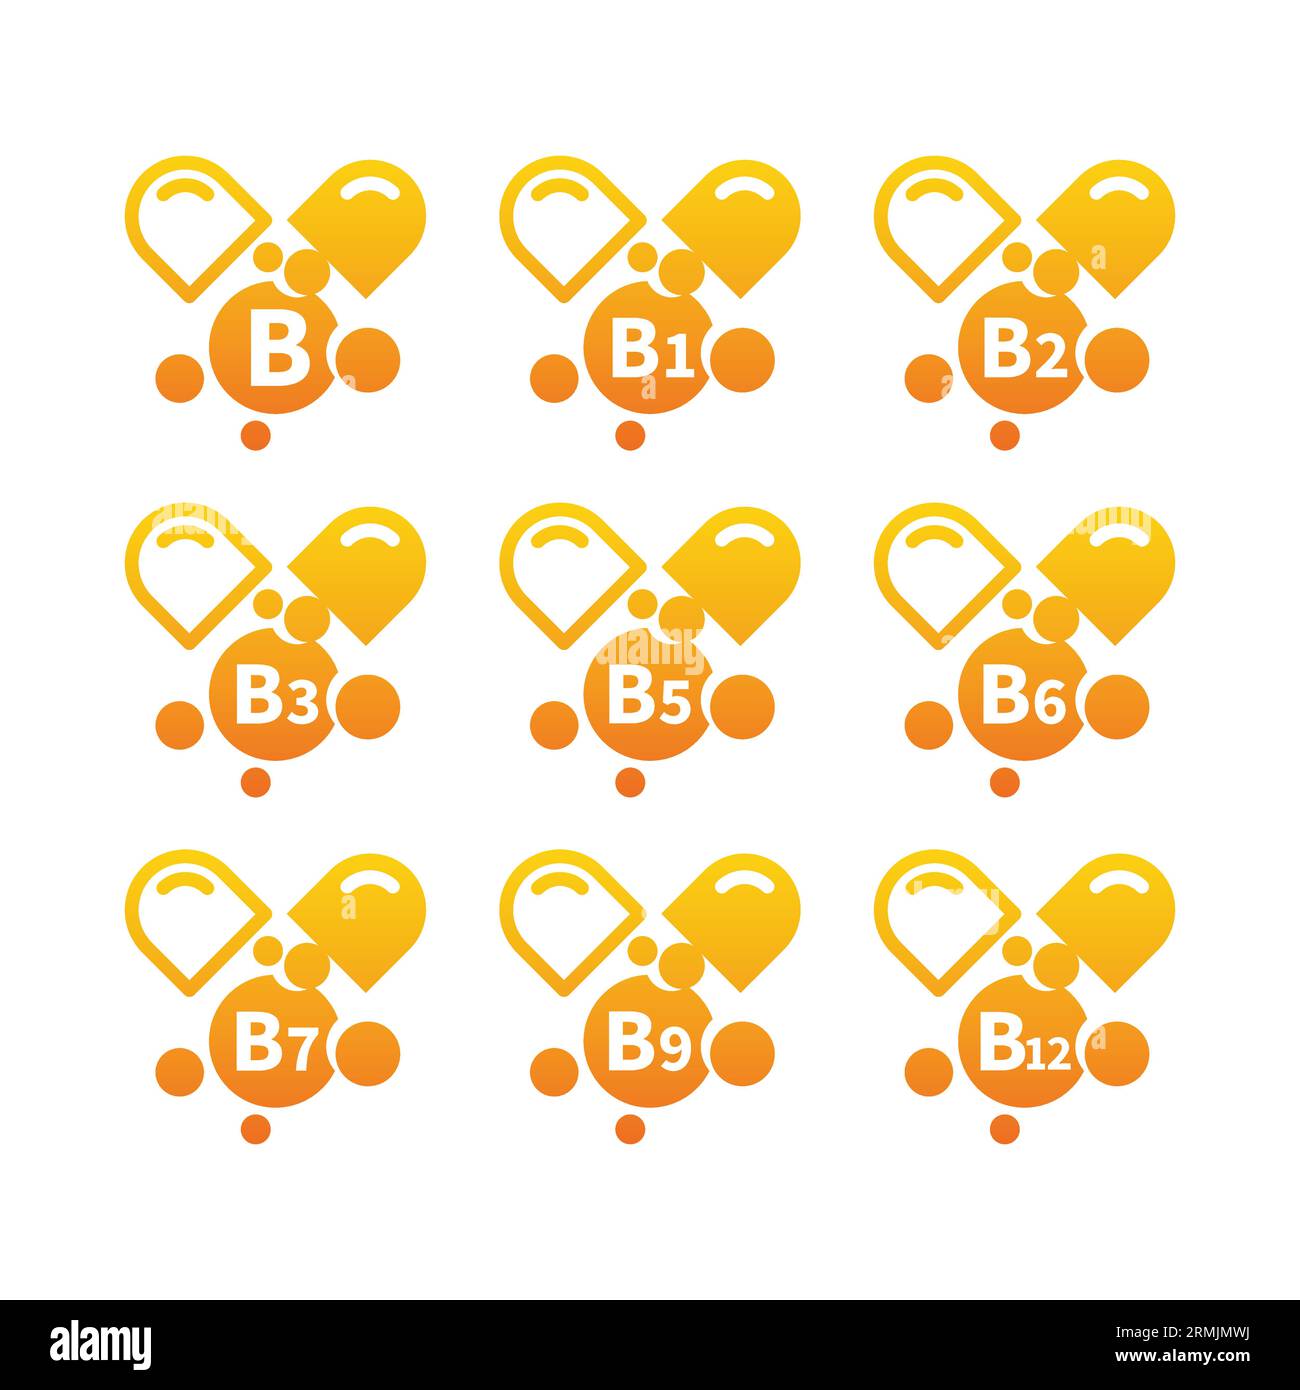 Jeu d'icônes de capsules de complexe de vitamine B. Icônes des vitamines b1, b3, b9 et b12. Illustration de Vecteur